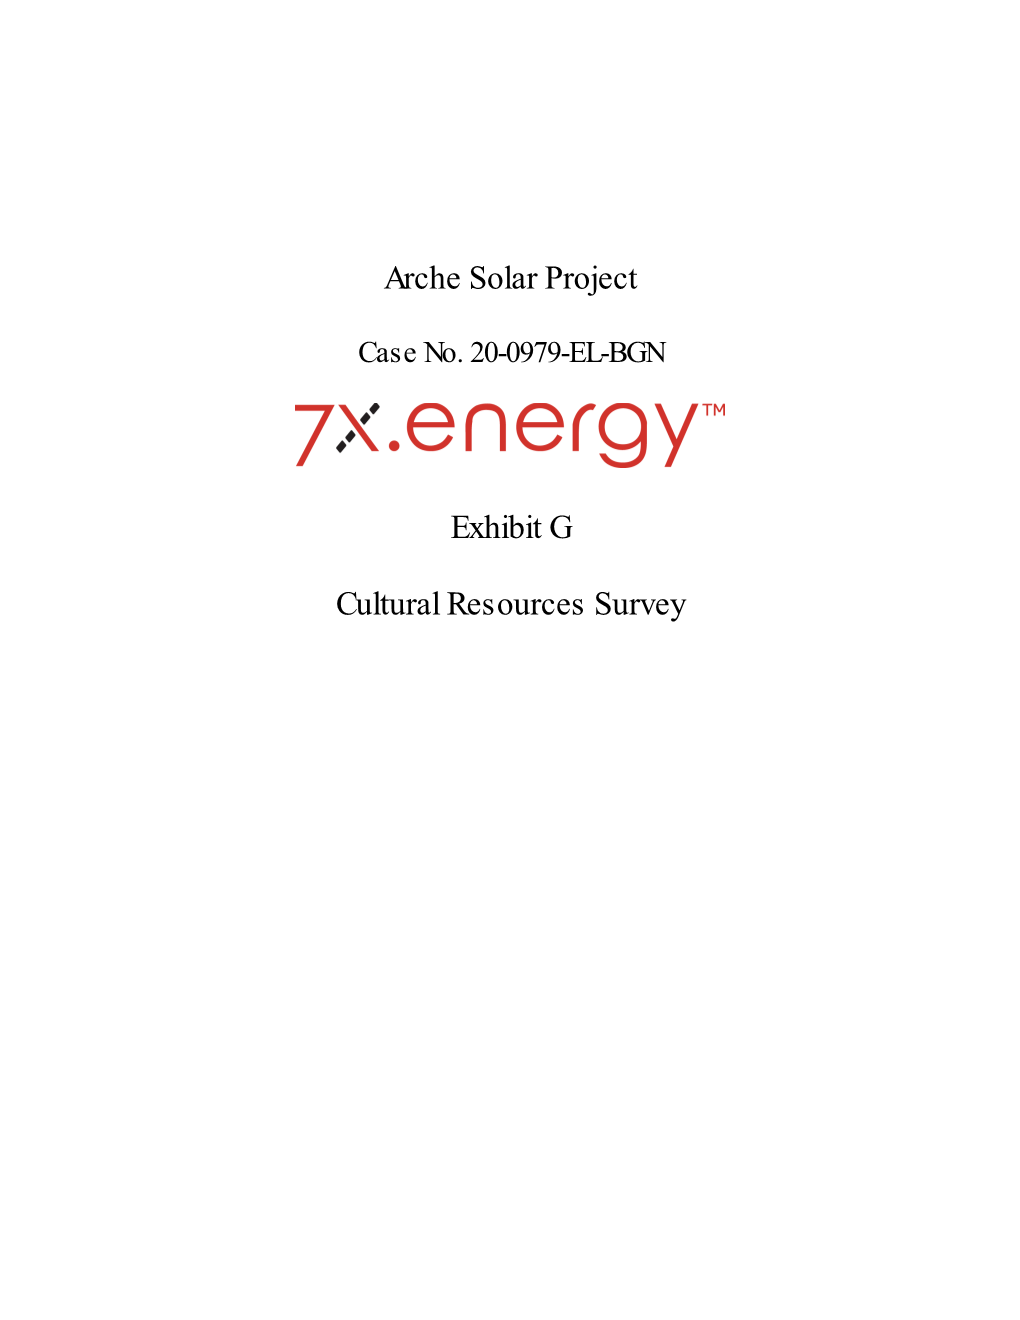 Arche Solar Project Exhibit G Cultural Resources Survey